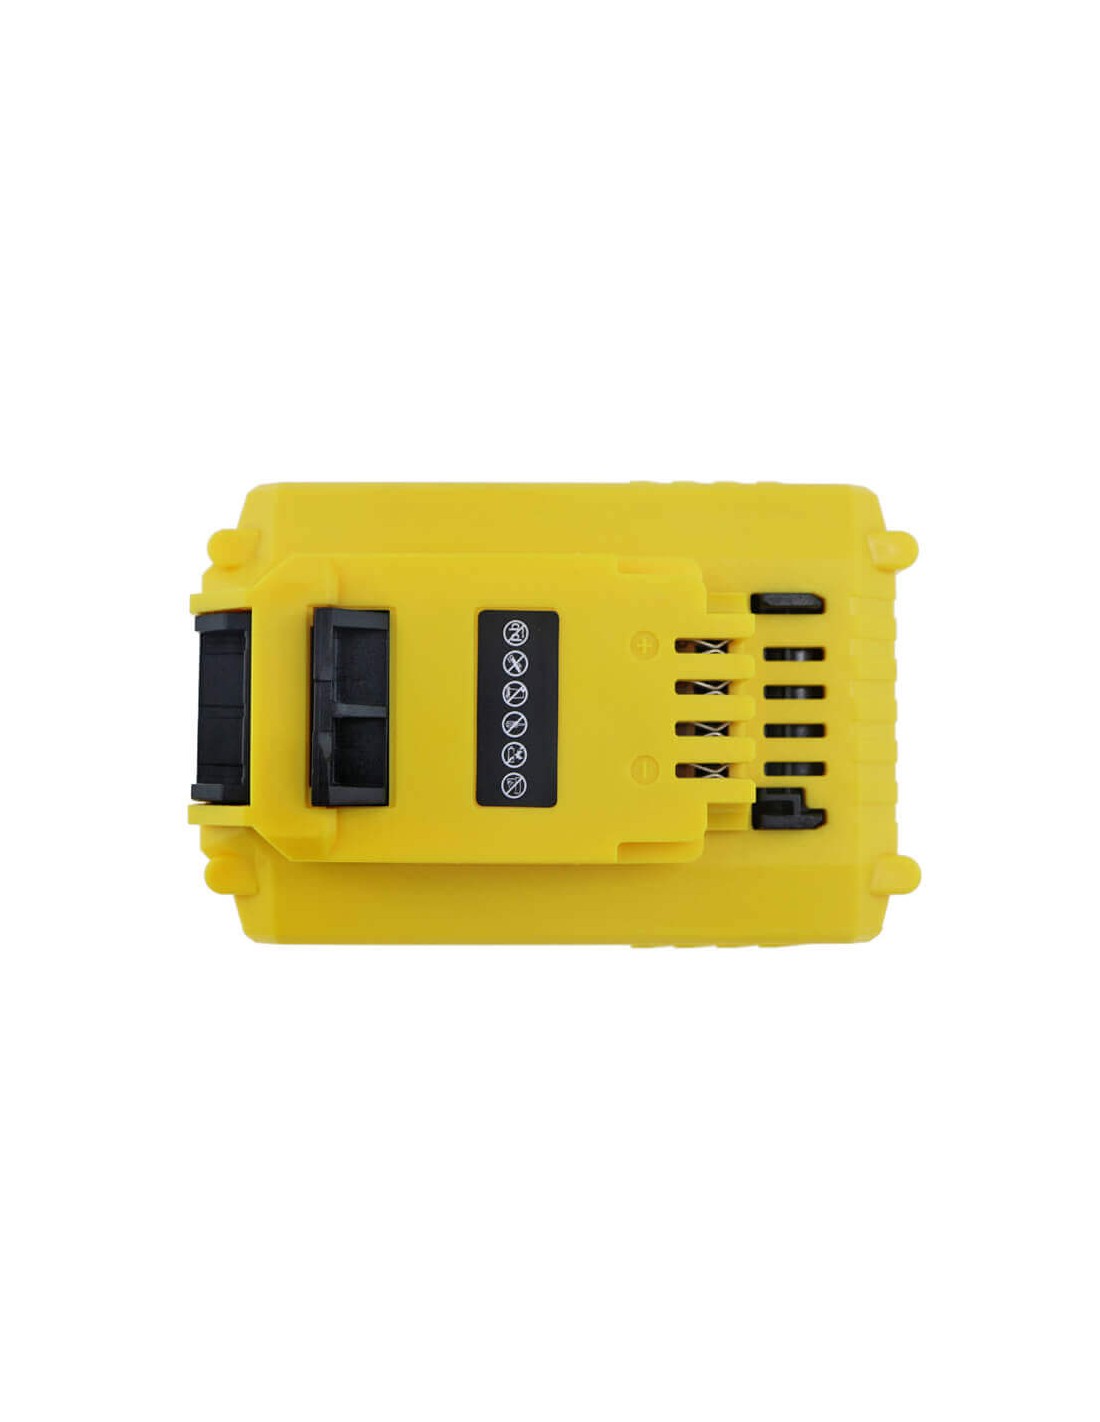 Battery for Stanley, Fmc625d2, Fmc645d2, Fmc675b 18V, 2000mAh - 36.00Wh